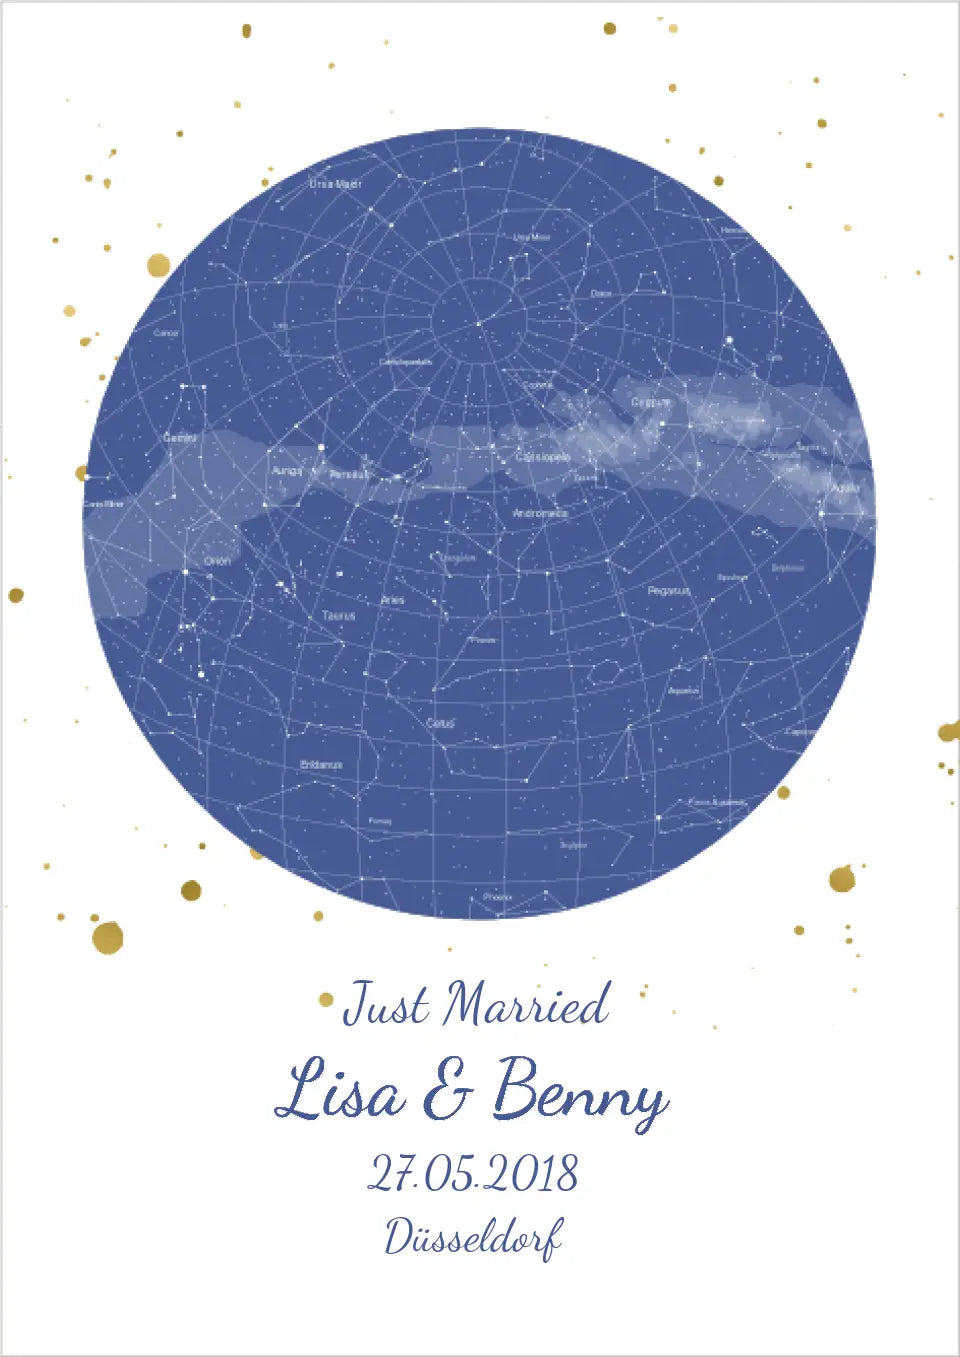 Hochzeitsgeschenk | Personalisierte Sternkarte |  Sternenbild Poster | Sternkarte Geschenk zur Hochzeit, zur Geburt, zur Taufe | Geschenk Brautpaar